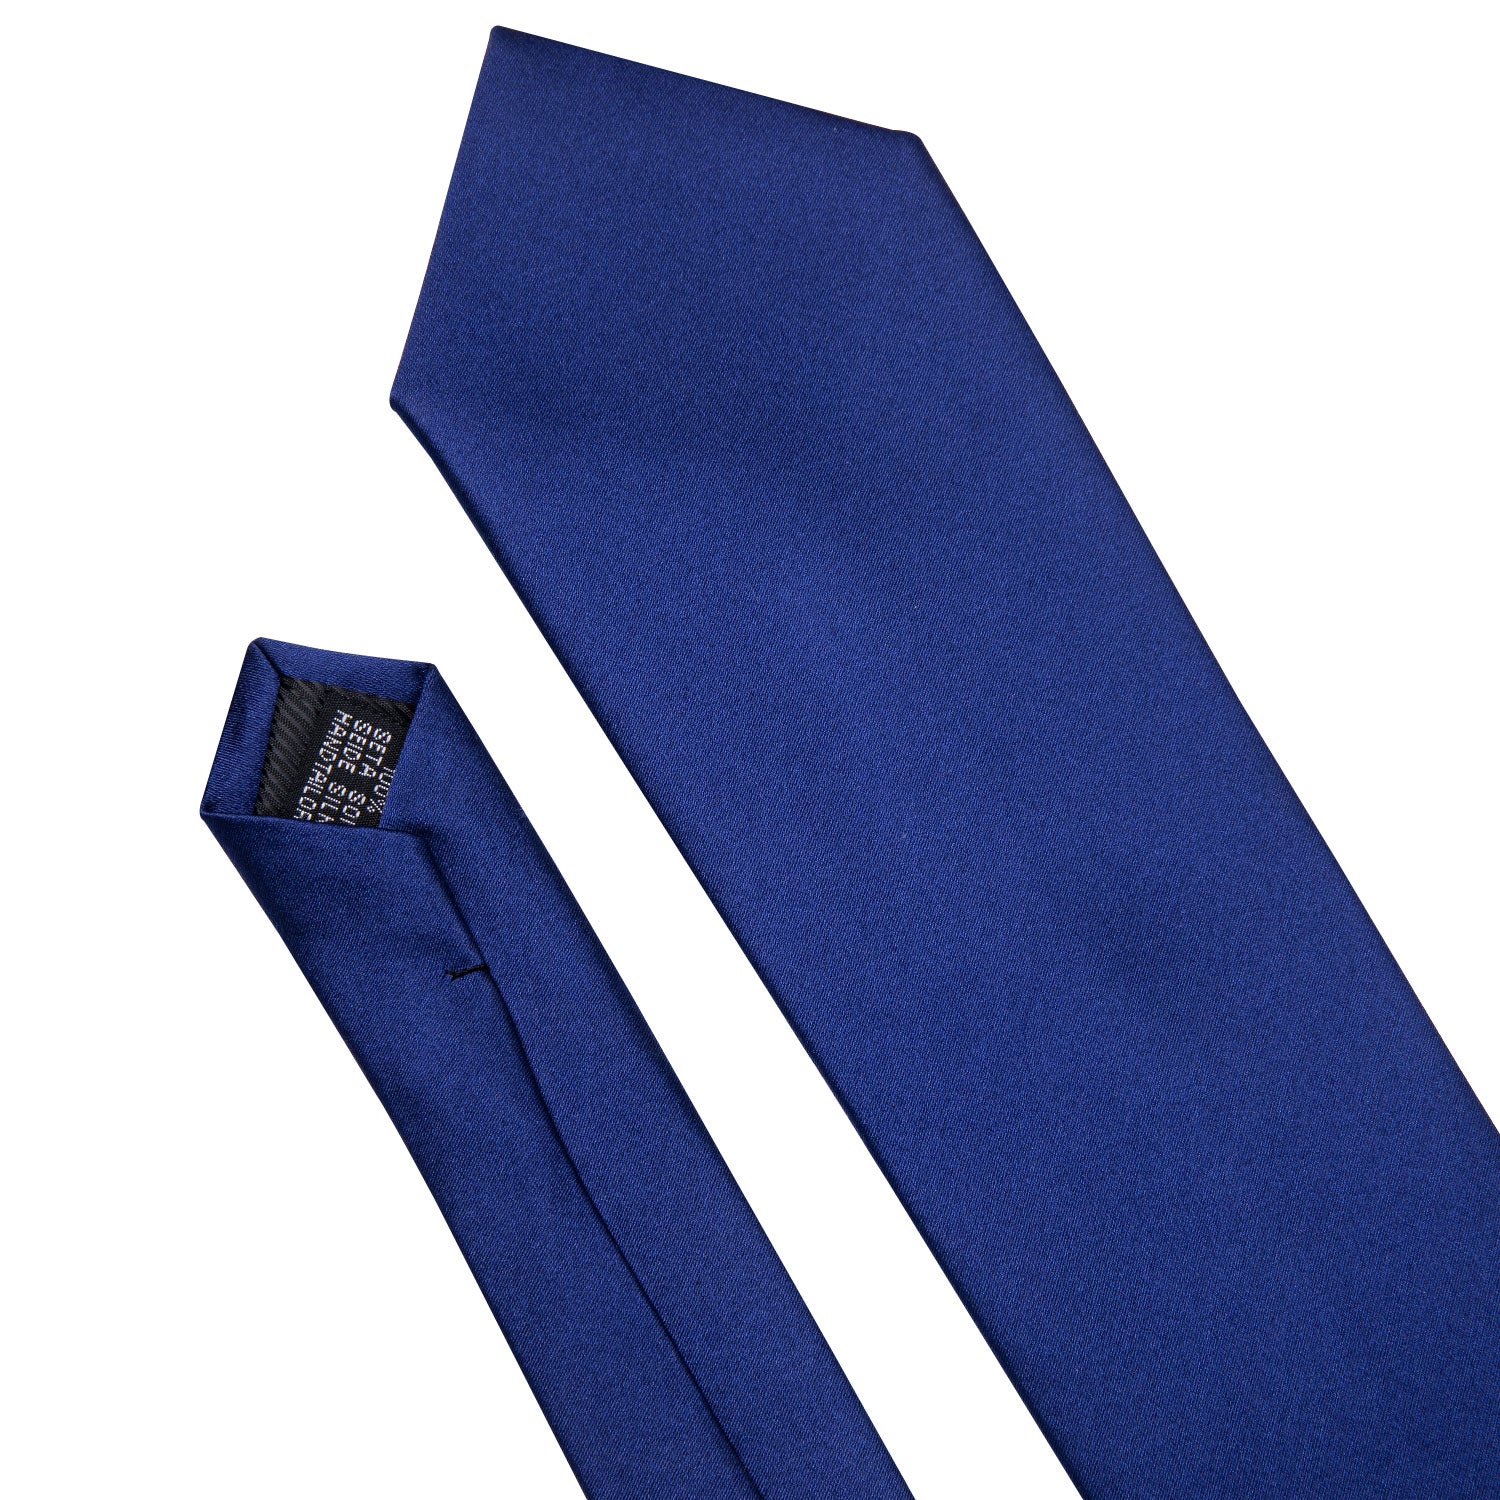 floral navy tie Dark Blue Men's business necktie 